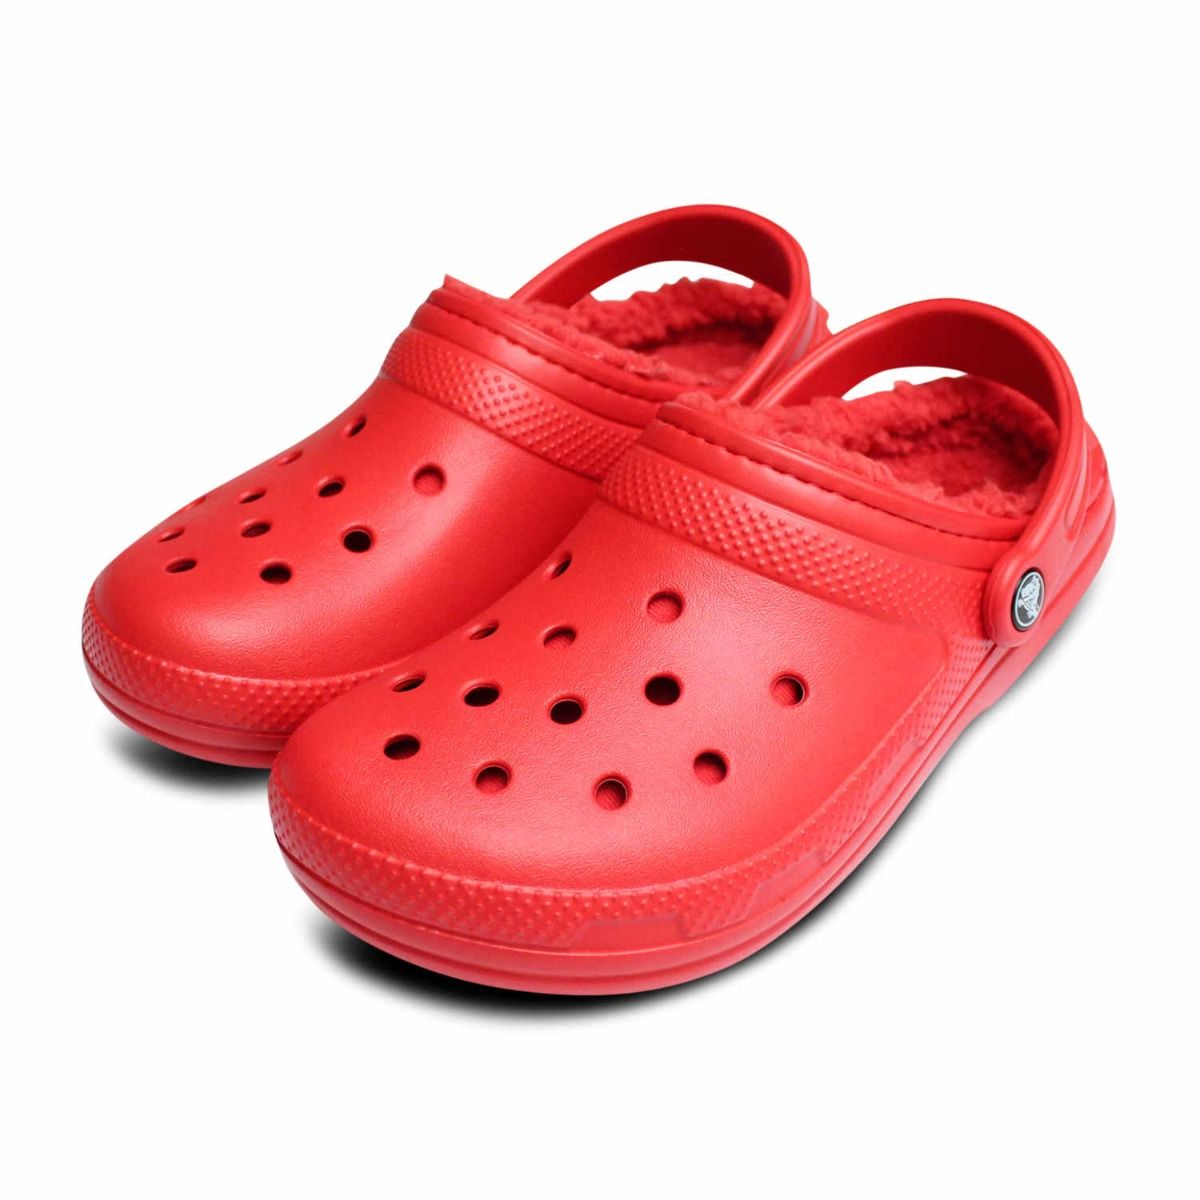 red classic crocs